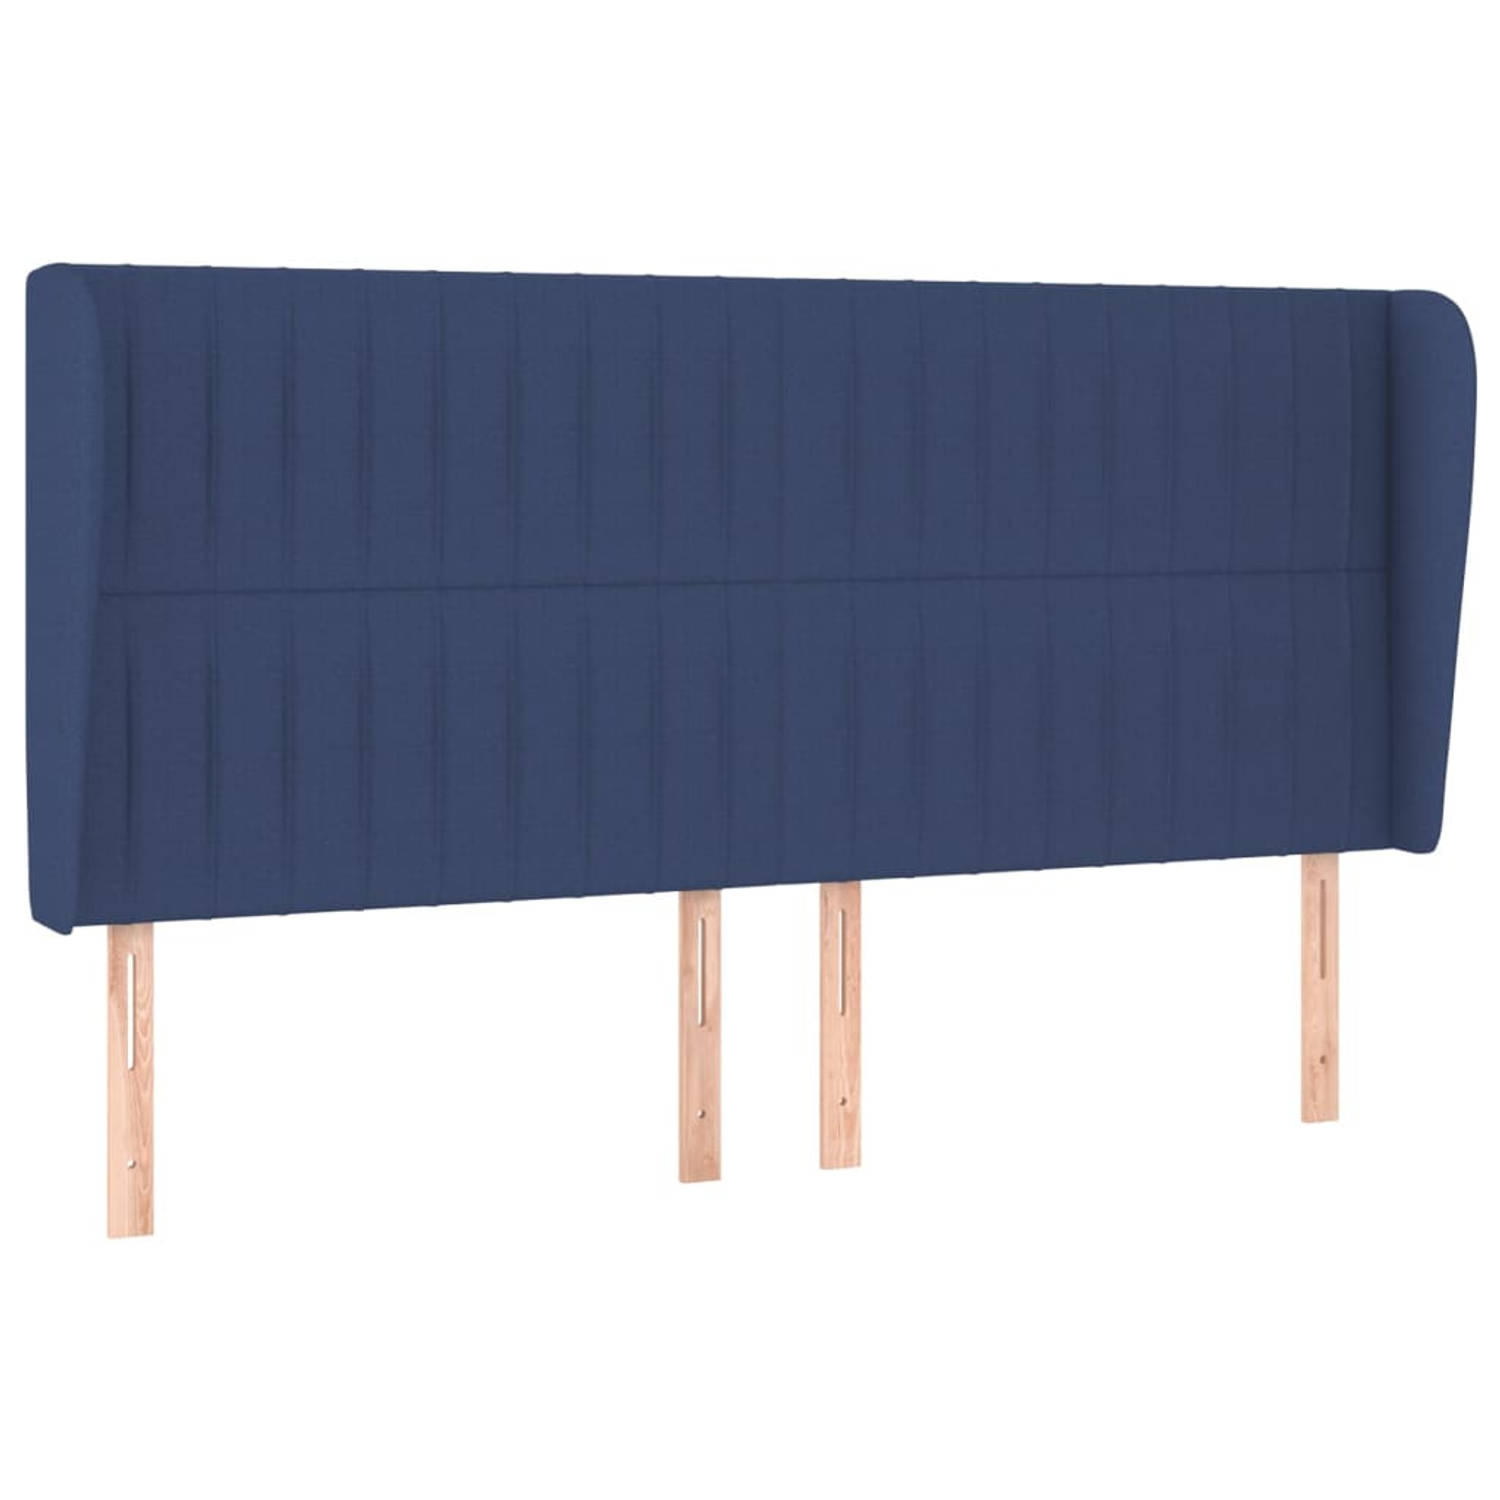 The Living Store Hoofdeind - Blauw - 183 x 23 x 118/128 cm - Trendy design - Duurzaam materiaal - Verstelbare hoogte